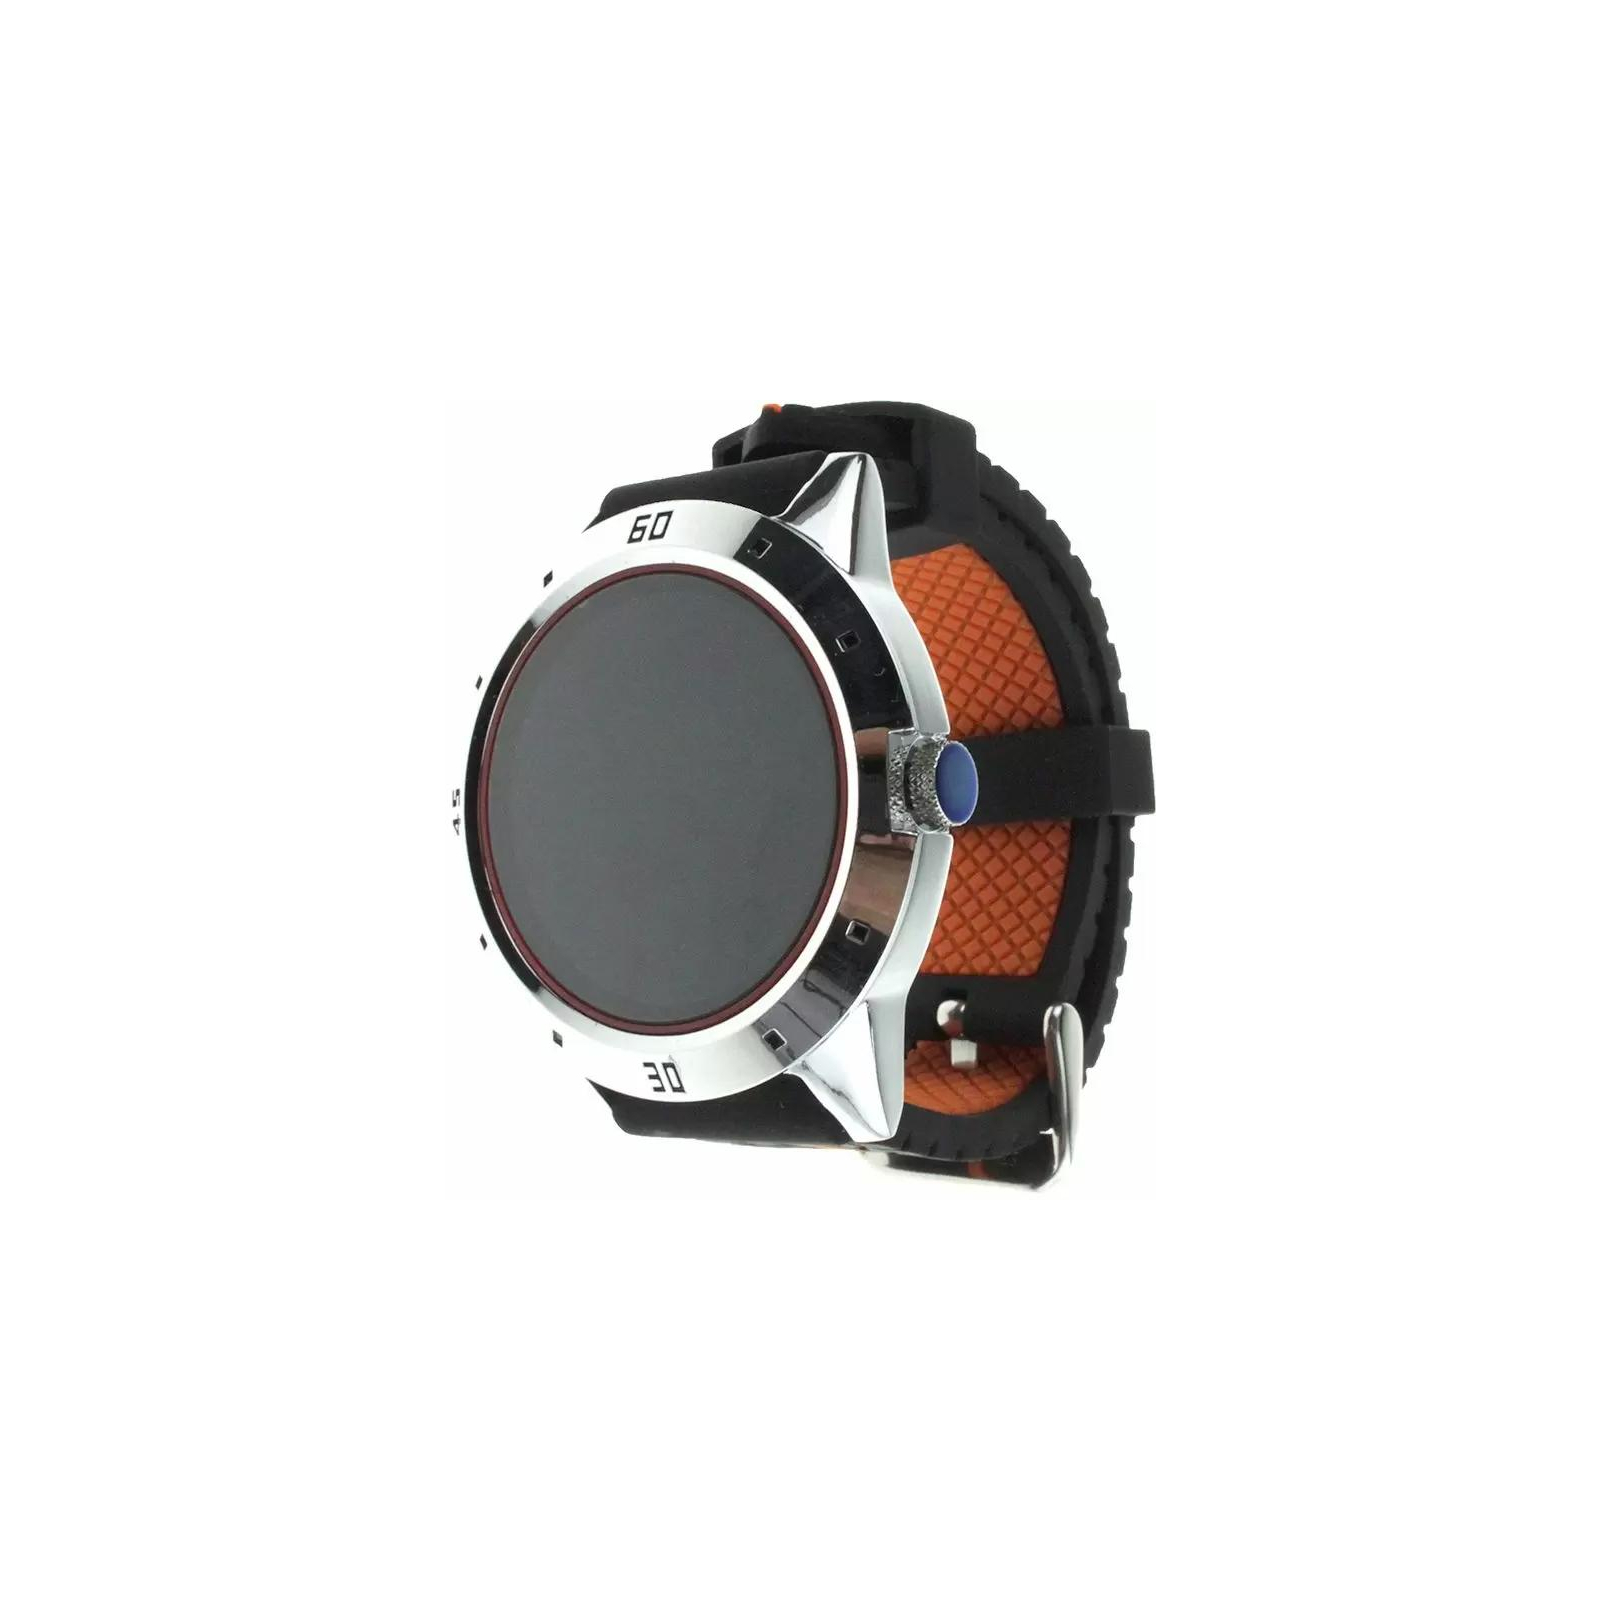 Смарт-часы UWatch N6 Silver (F_59043)